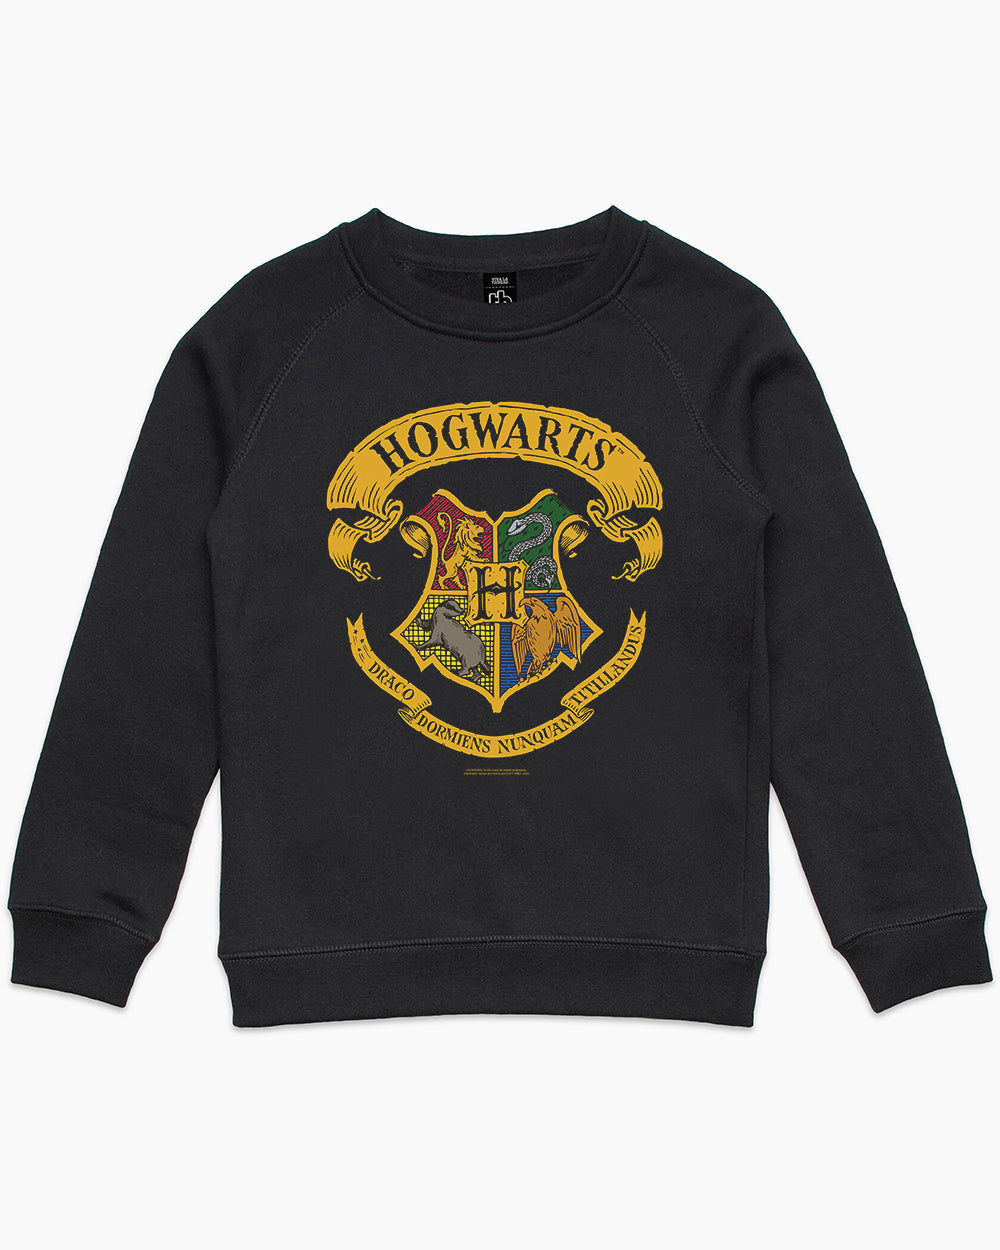 Hogwarts Crest Kids Hoodie | Threadheads Merch Potter Harry Europe Official 